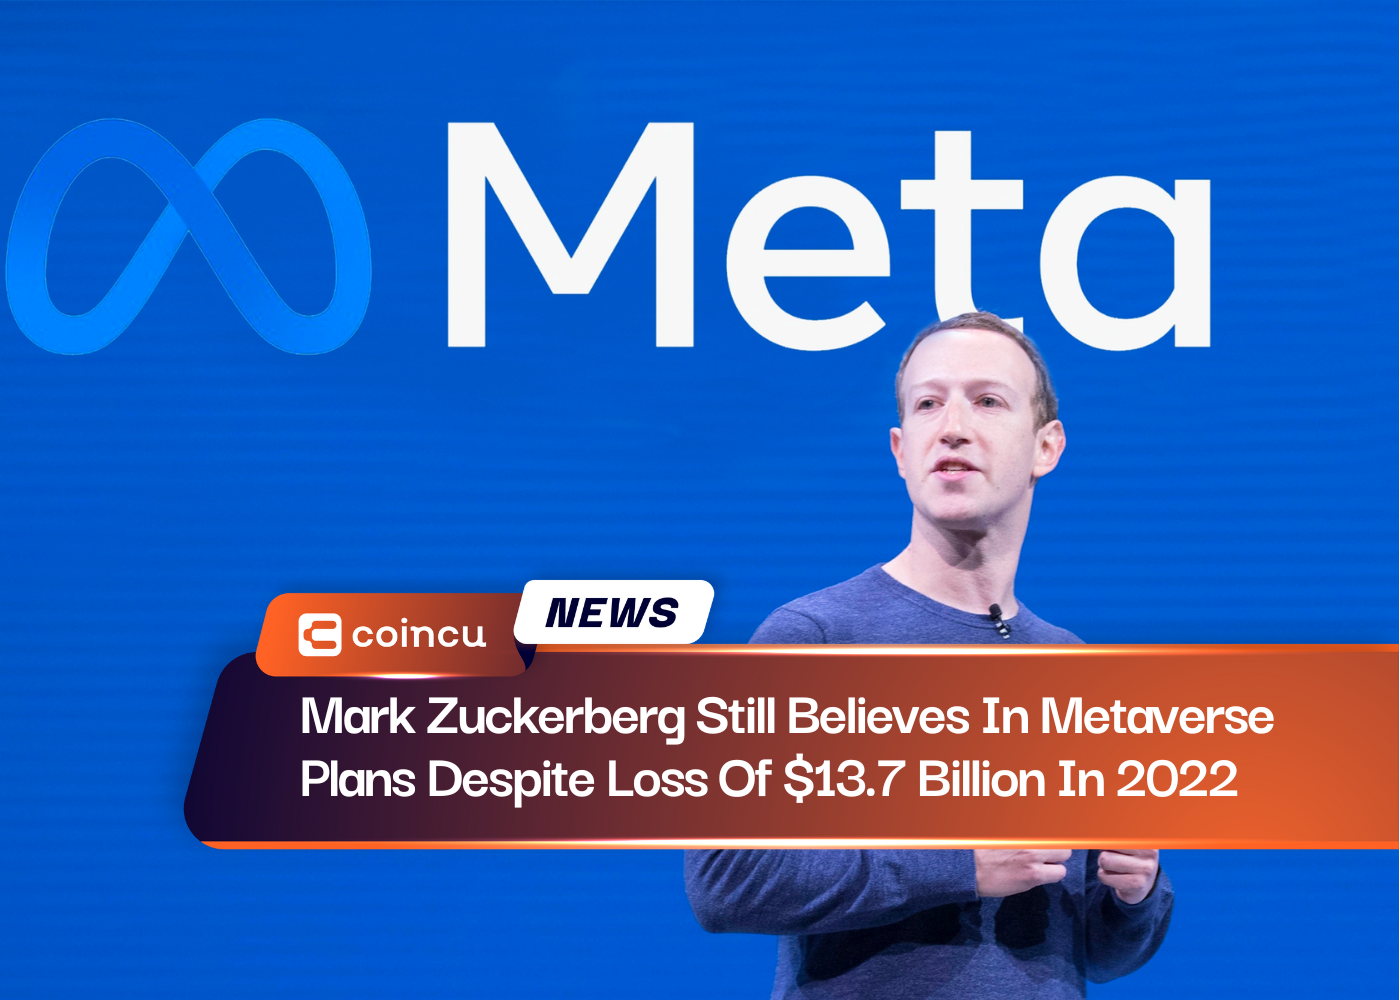 Mark Zuckerberg croit toujours aux plans métaverse malgré une perte de 13.7 milliards de dollars en 2022